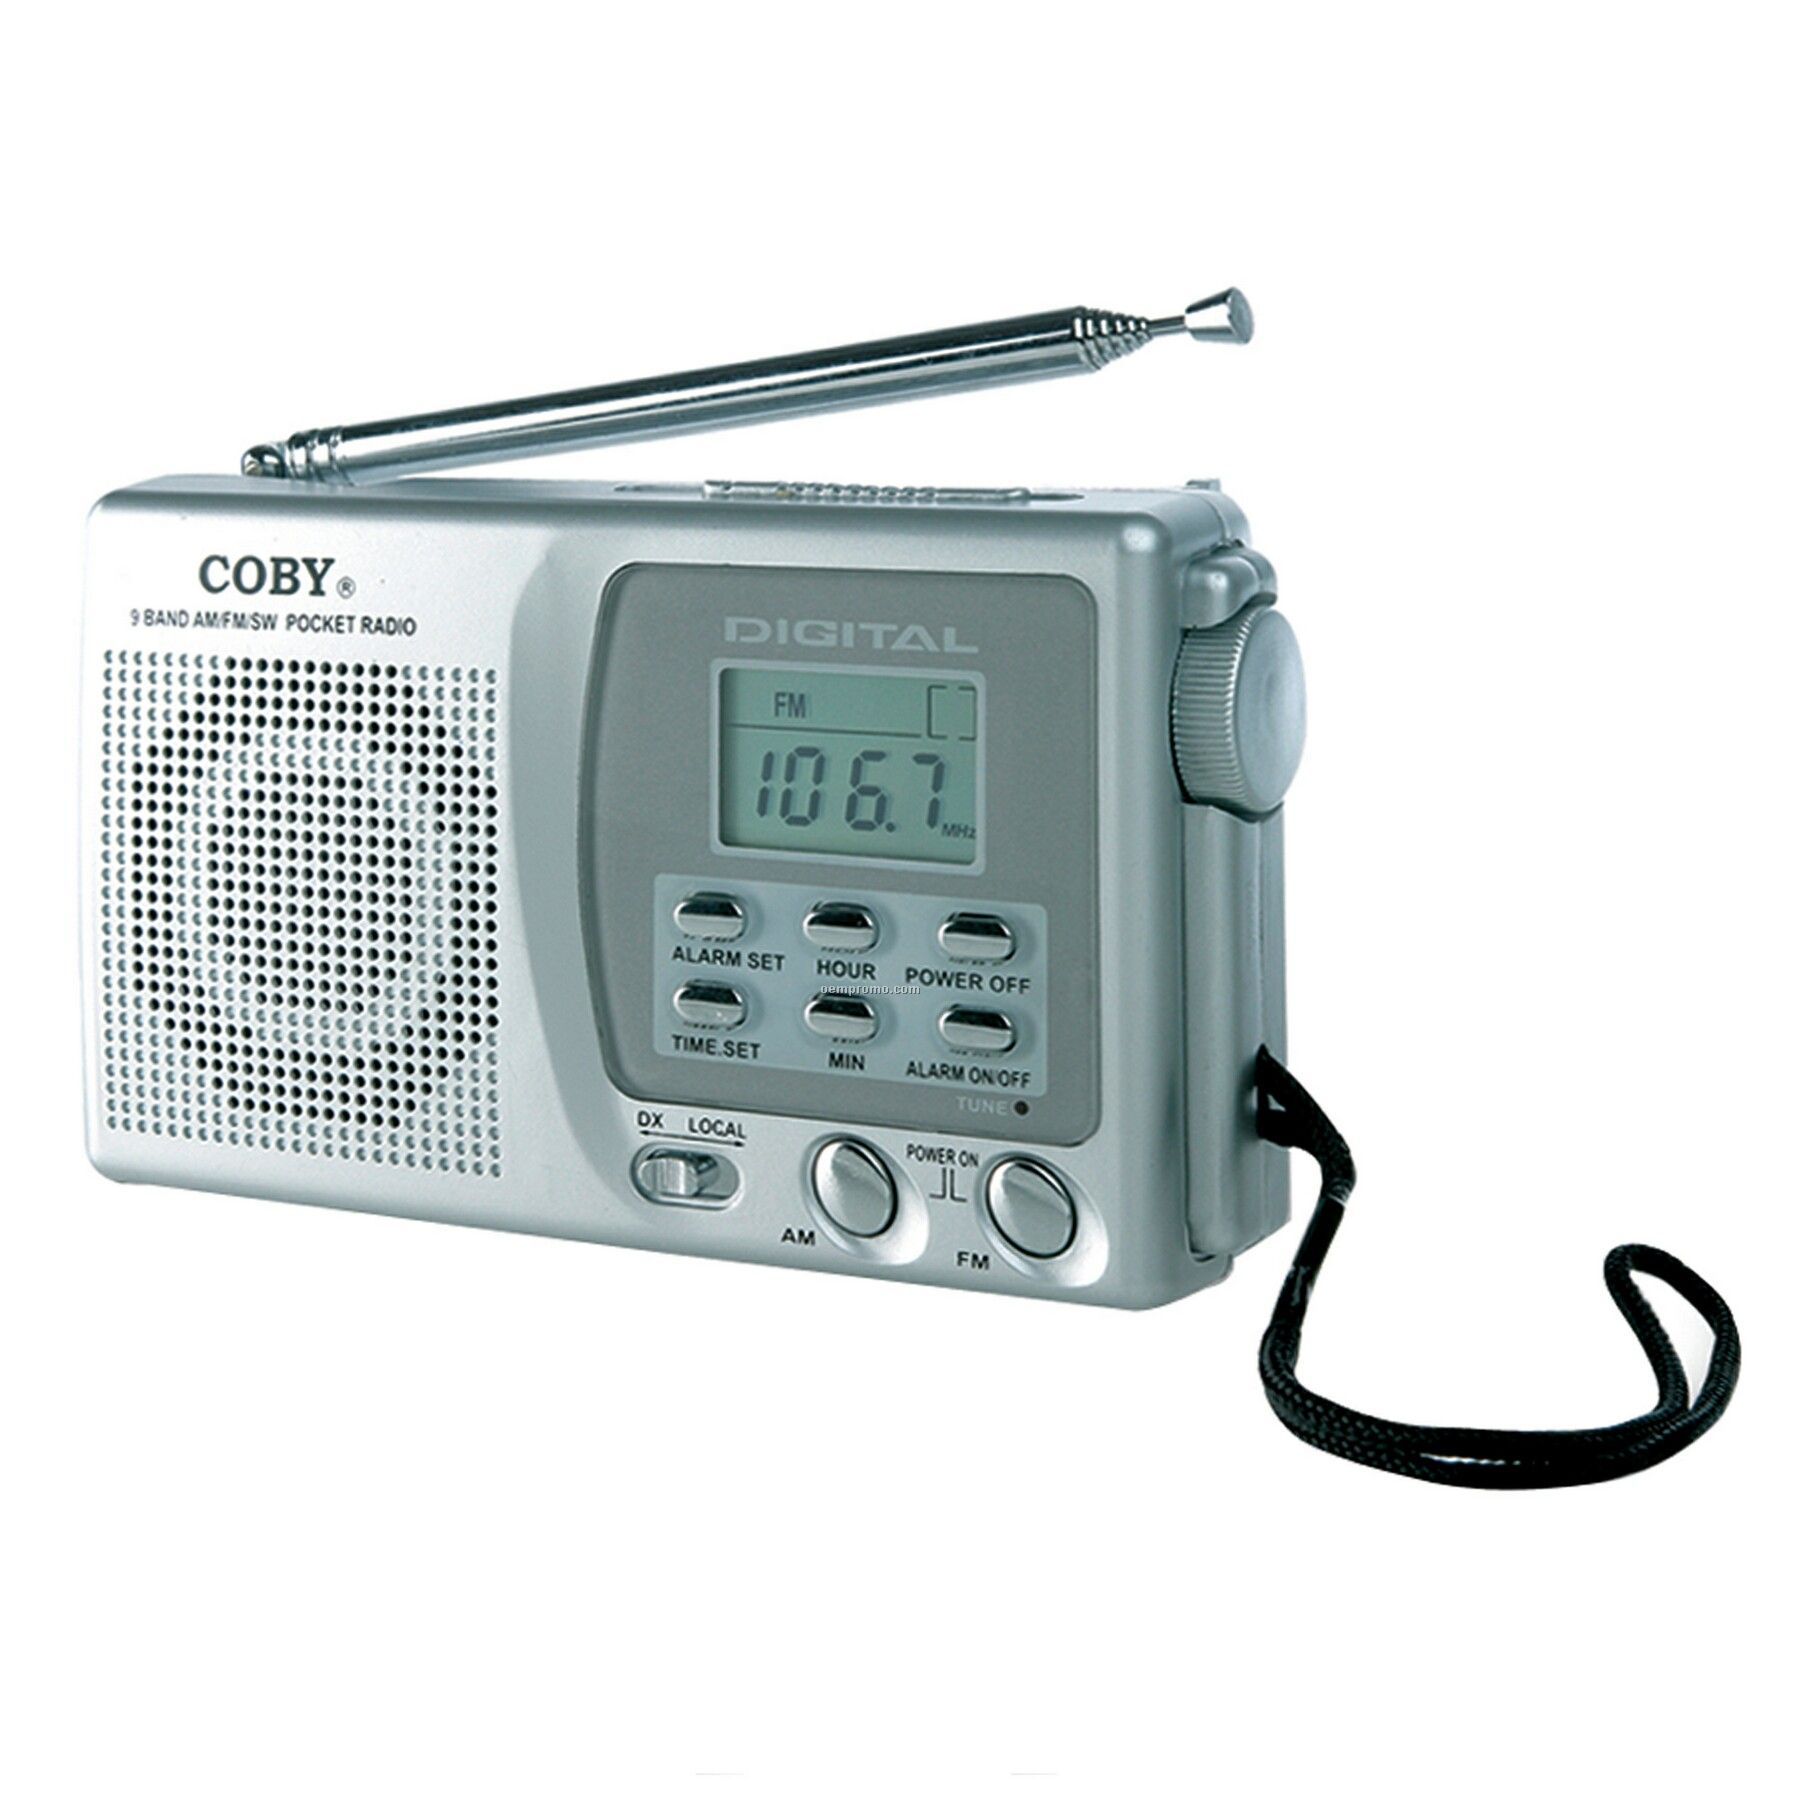 9 World Band AM/FM Shortwave Radio With Digital Display